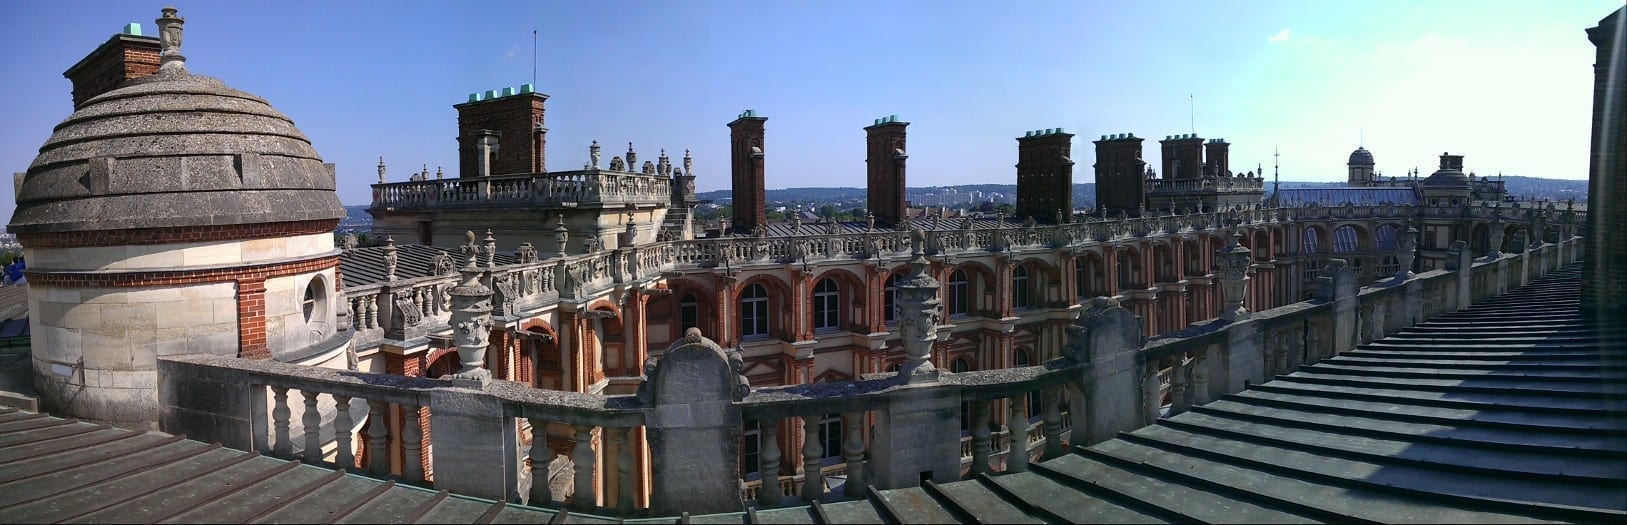 圣日尔曼昂莱王宫（Saint-Germain-en-Laye）楼顶。该城堡是于路易十四时代迁入凡尔赛宫前法国王室的主要居住地